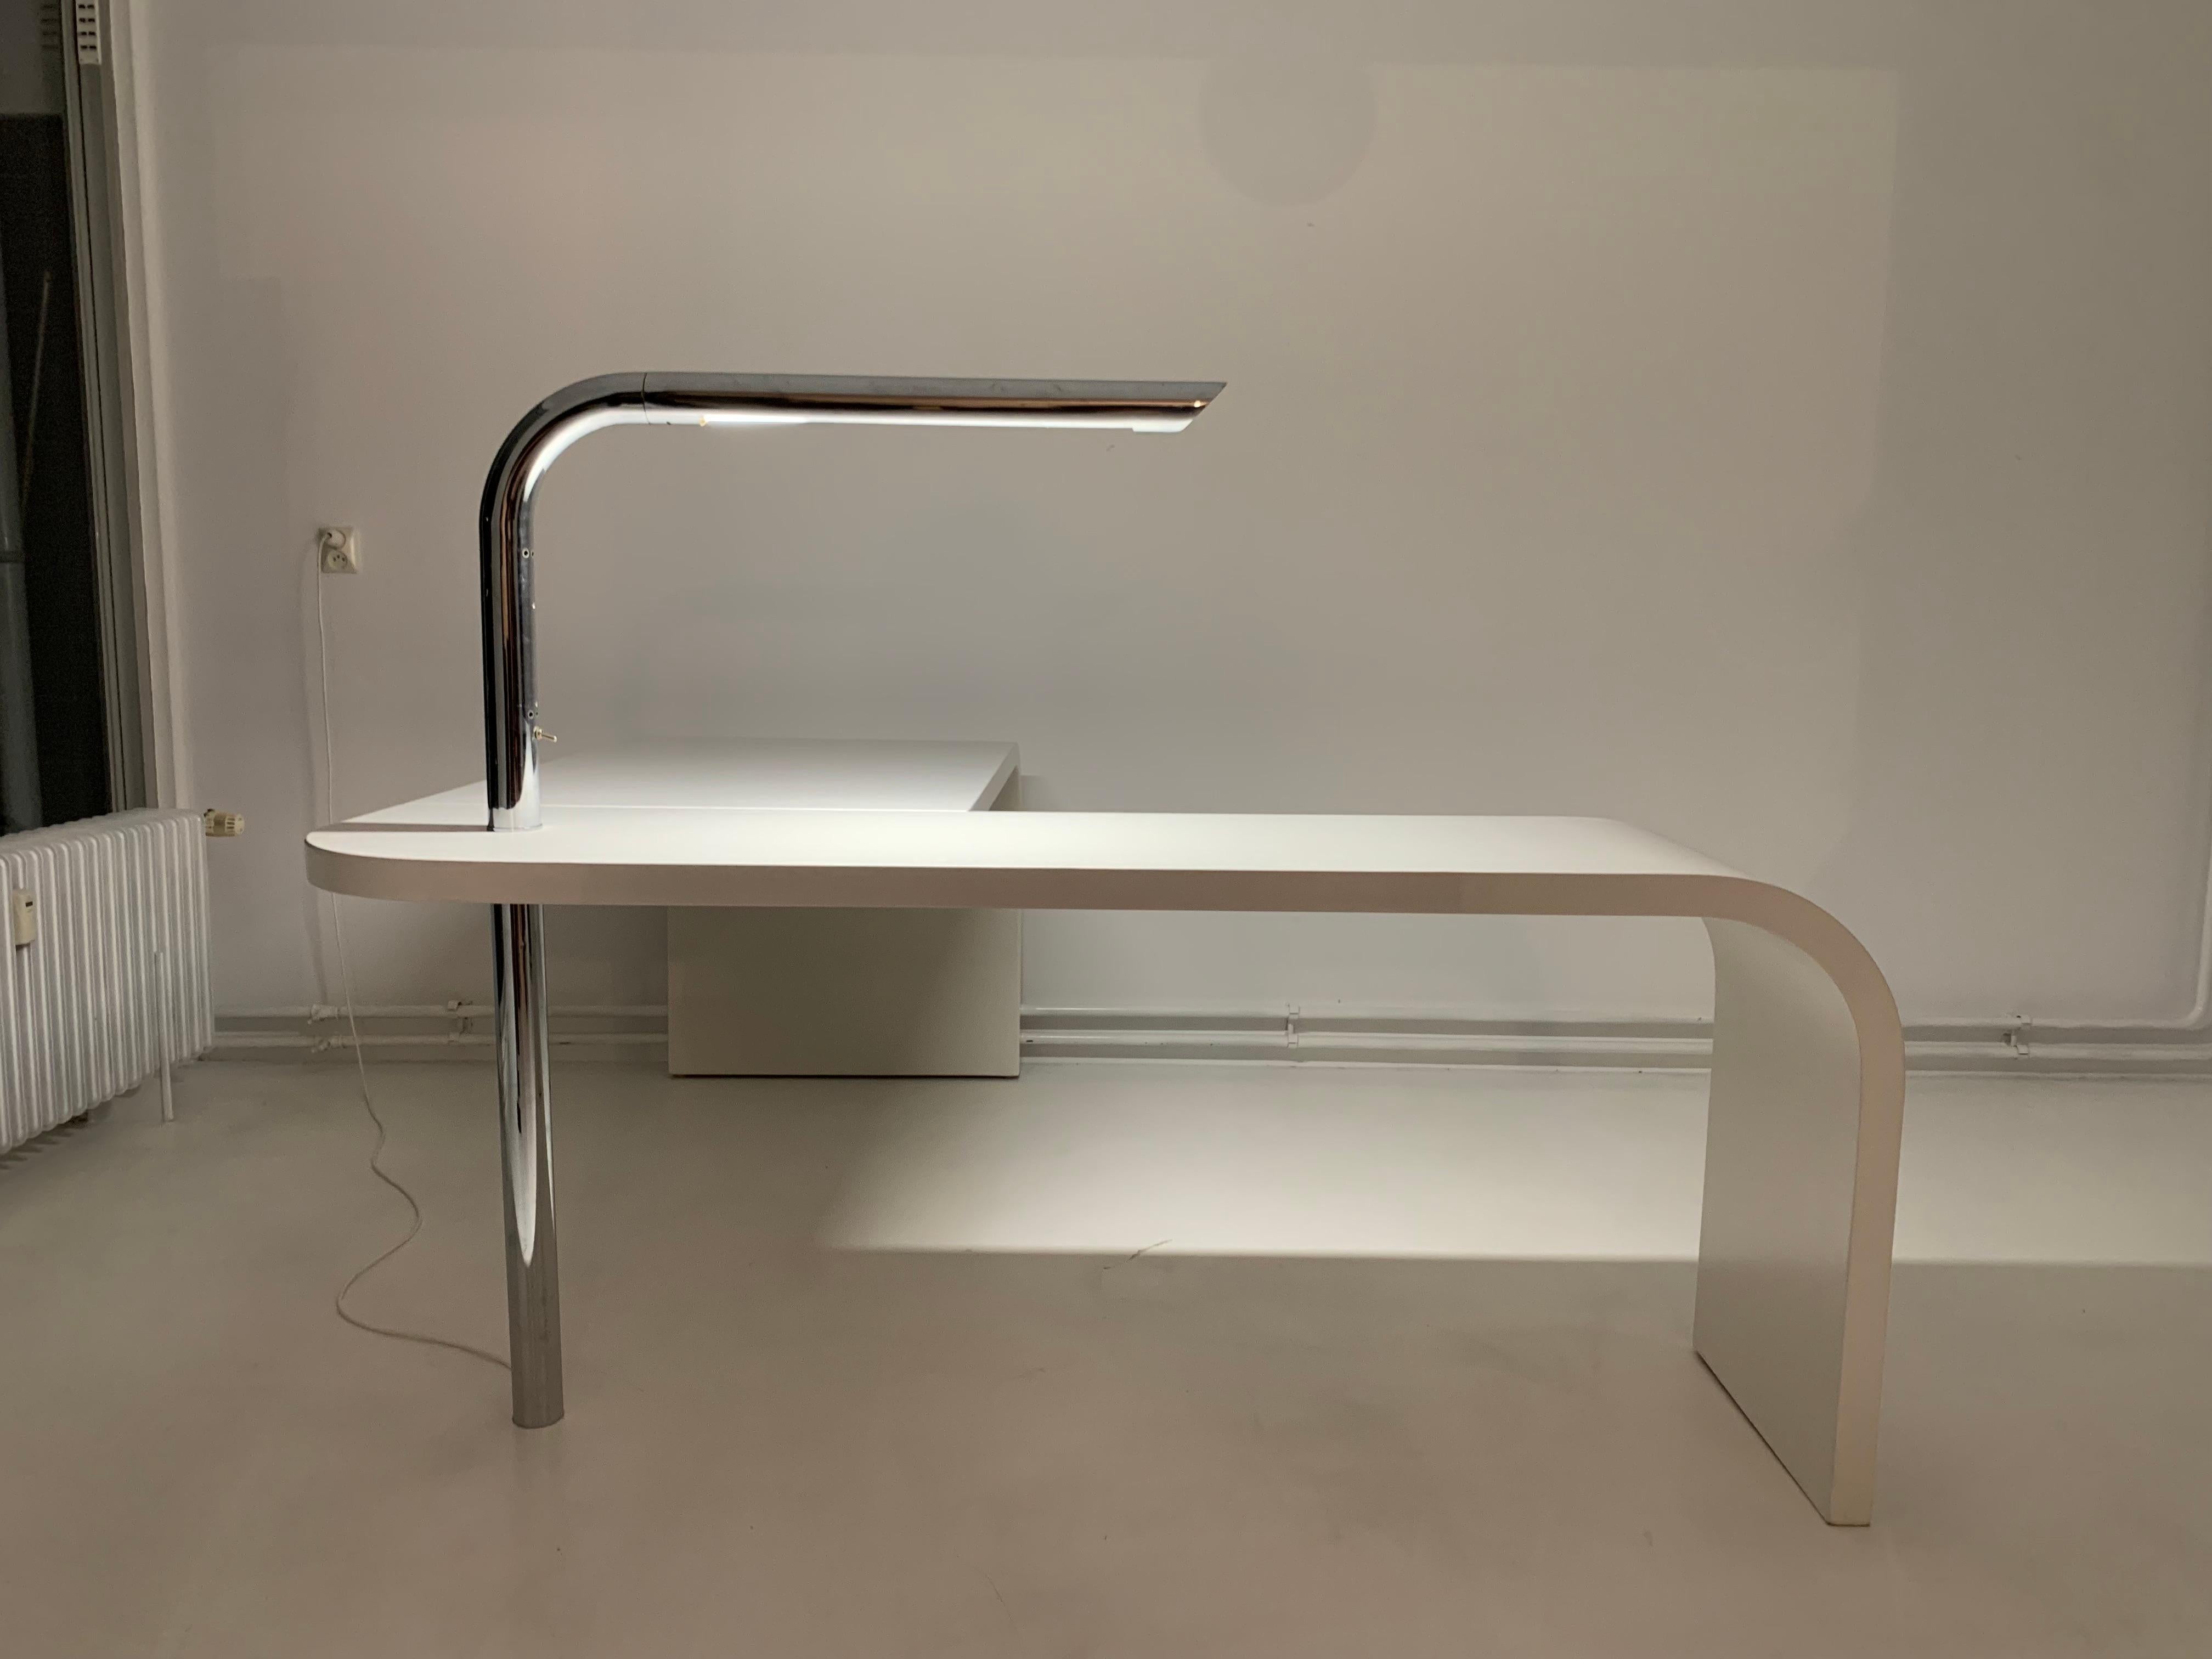 Direk desk by Ennio Chiggio for Nikol International, 1979.